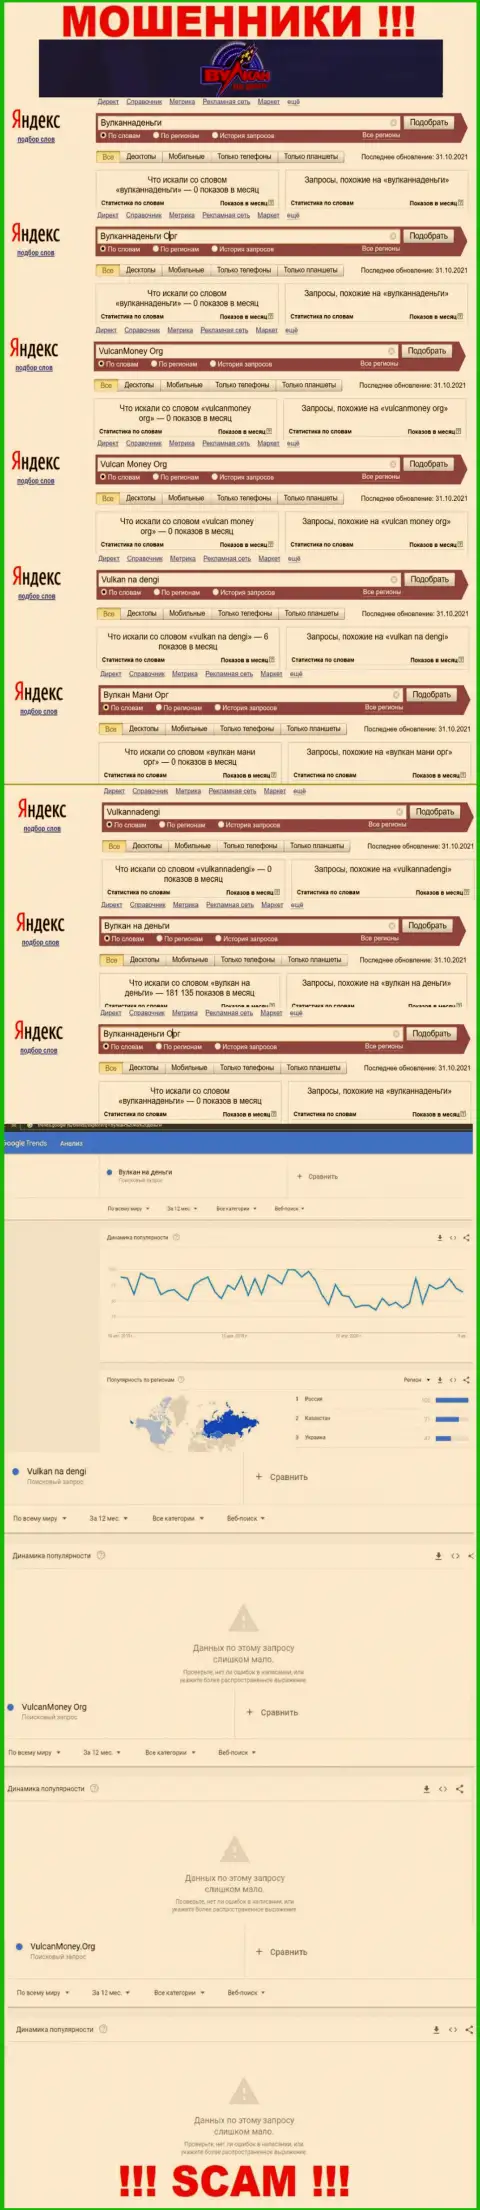 Подробный анализ суммарного числа online запросов в поисковиках internet сети по мошенникам Vulkannadengi